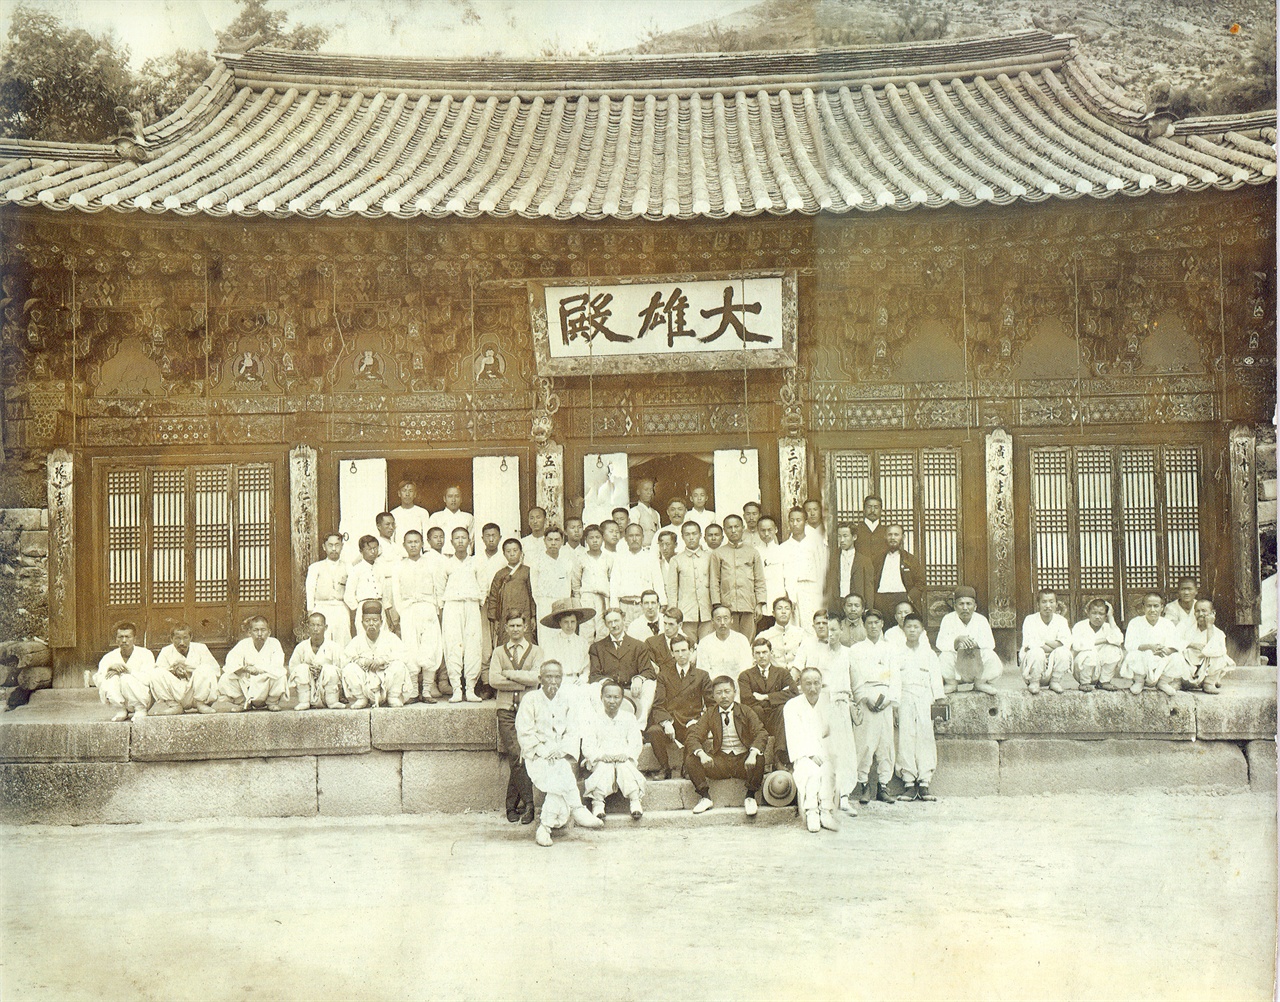 1910년 6월 22일부터 27일까지 진관사에서 김규식 간사 주관 하에 개최된 제1회 학생 하령회 기념사진. 시진 속 추사의 현판 글씨가 또렷하다. 